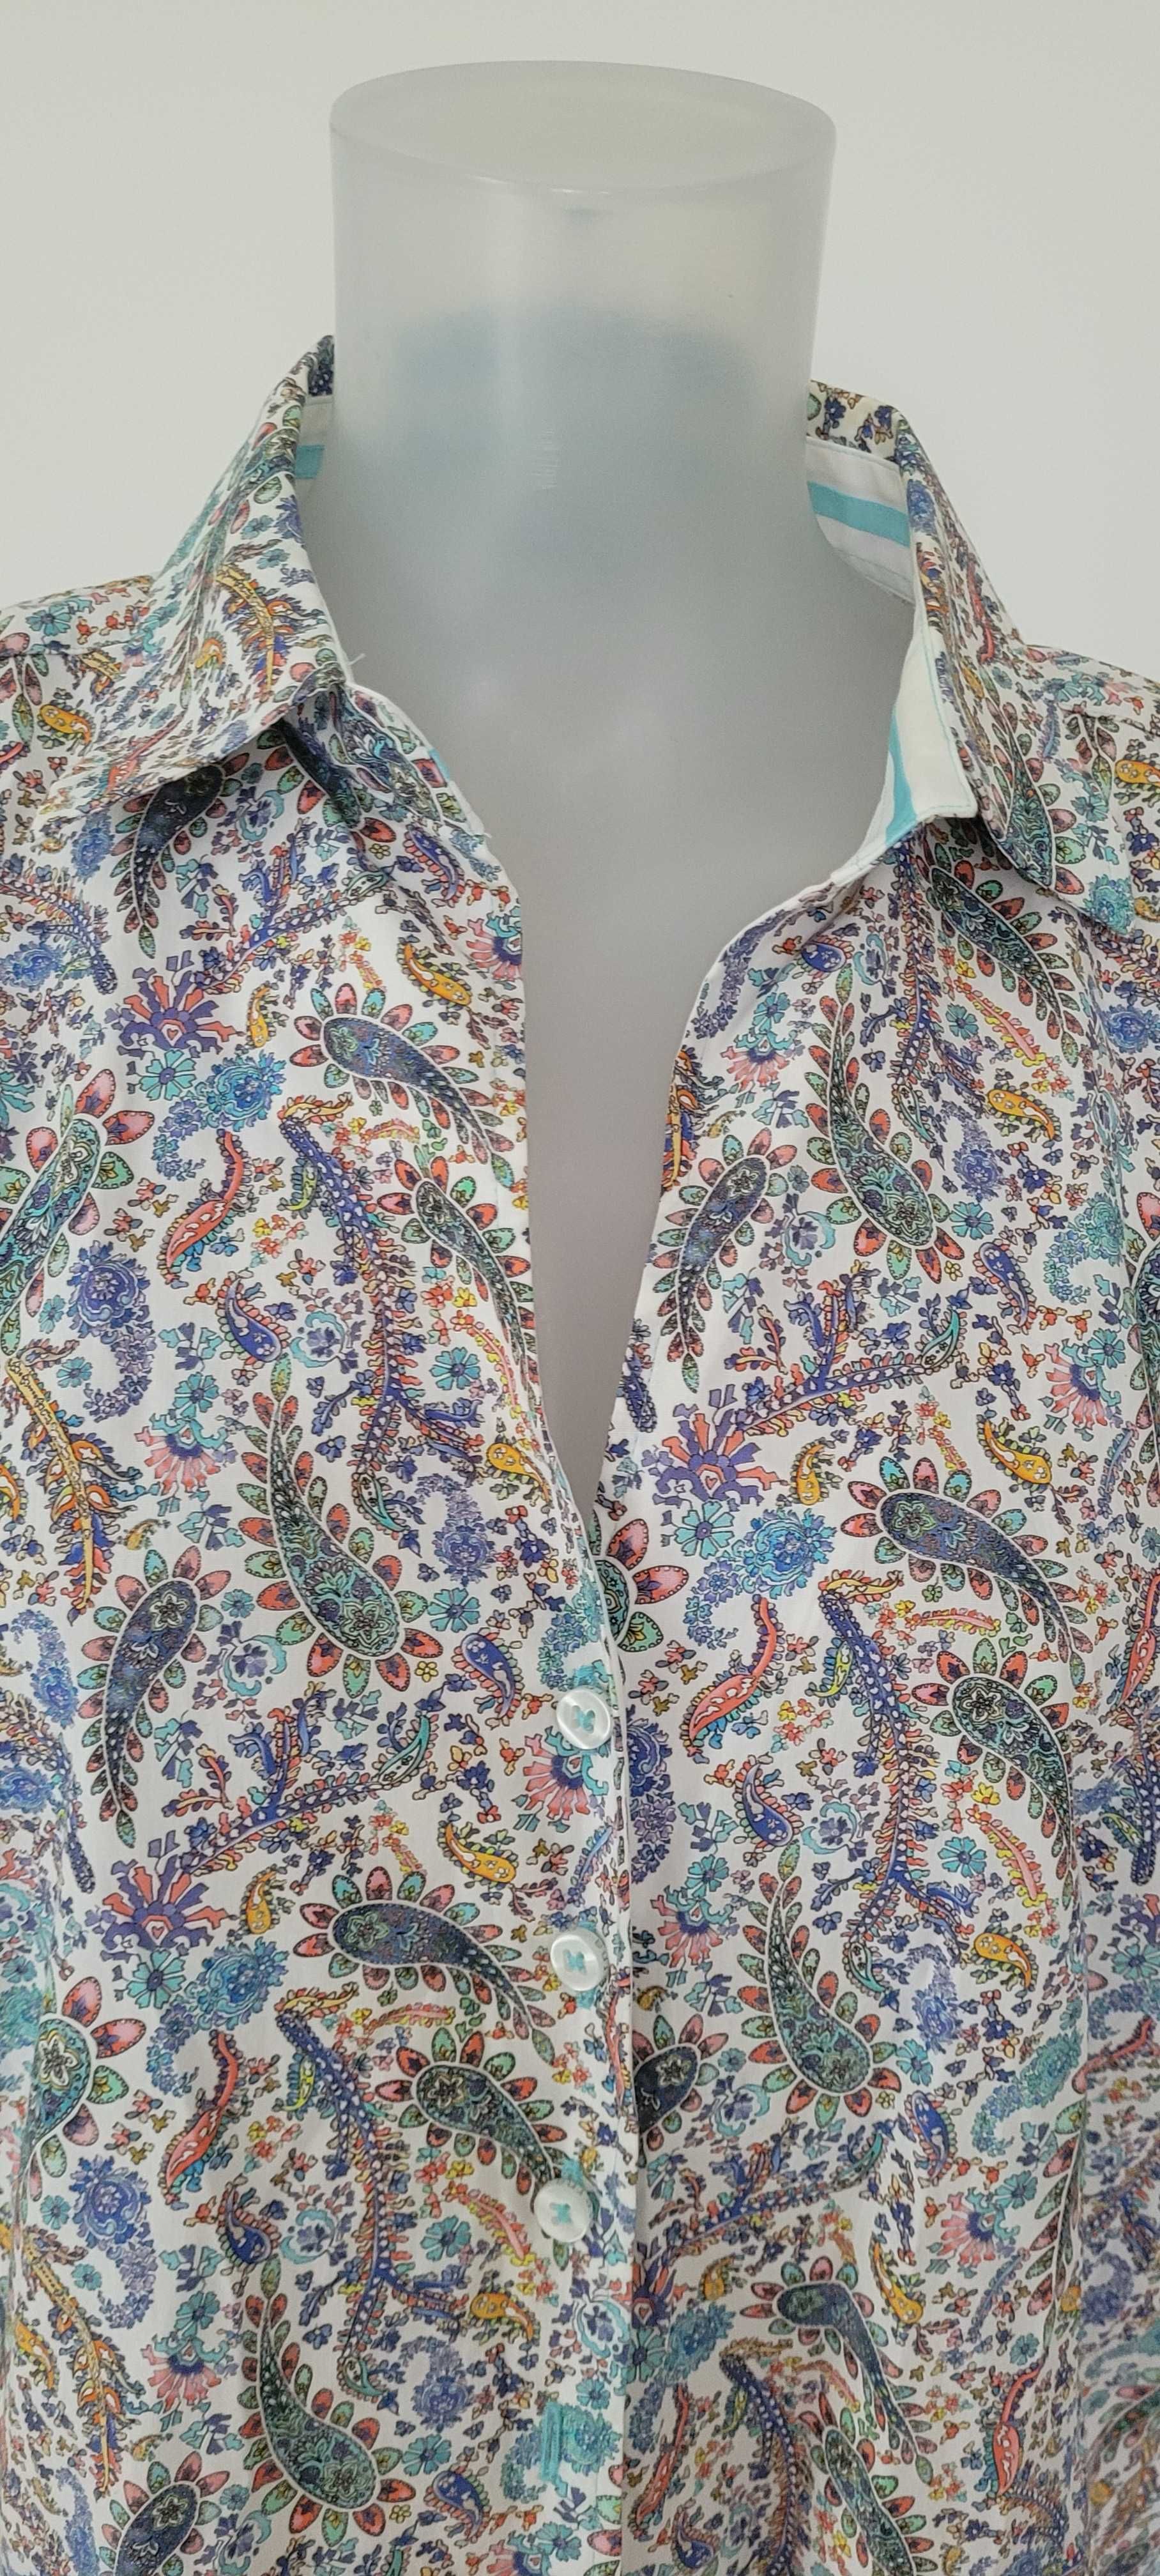 Bluzka koszula wielokolorowa bawełna Eterna, rozmiar 44